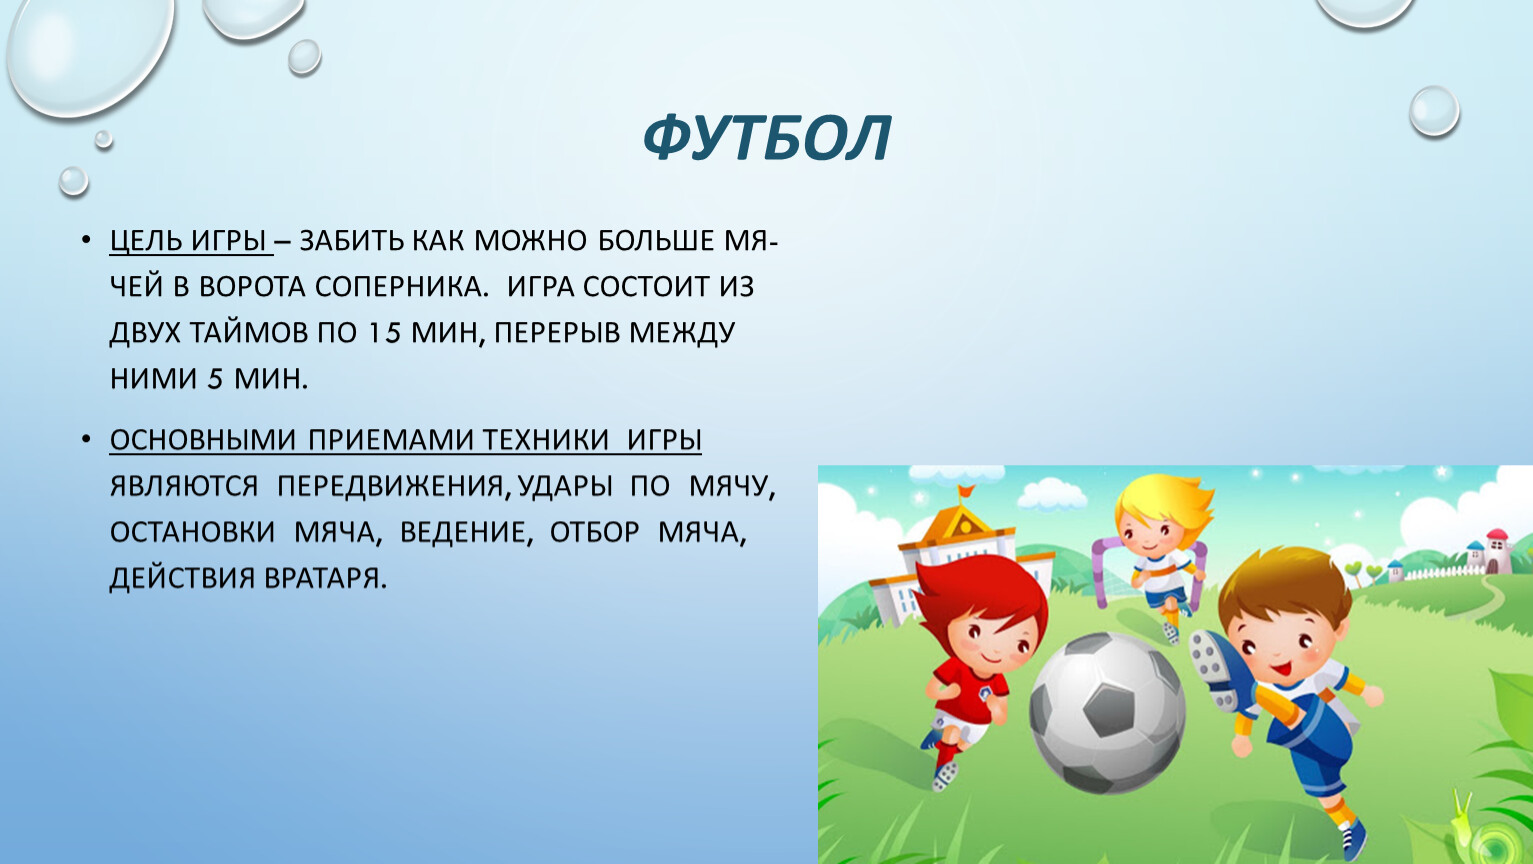 Цель игры телефон. Цель игры в футбол. Футбол игра цель и задачи. Игра футбол цель игры. Цель футбола для детей.